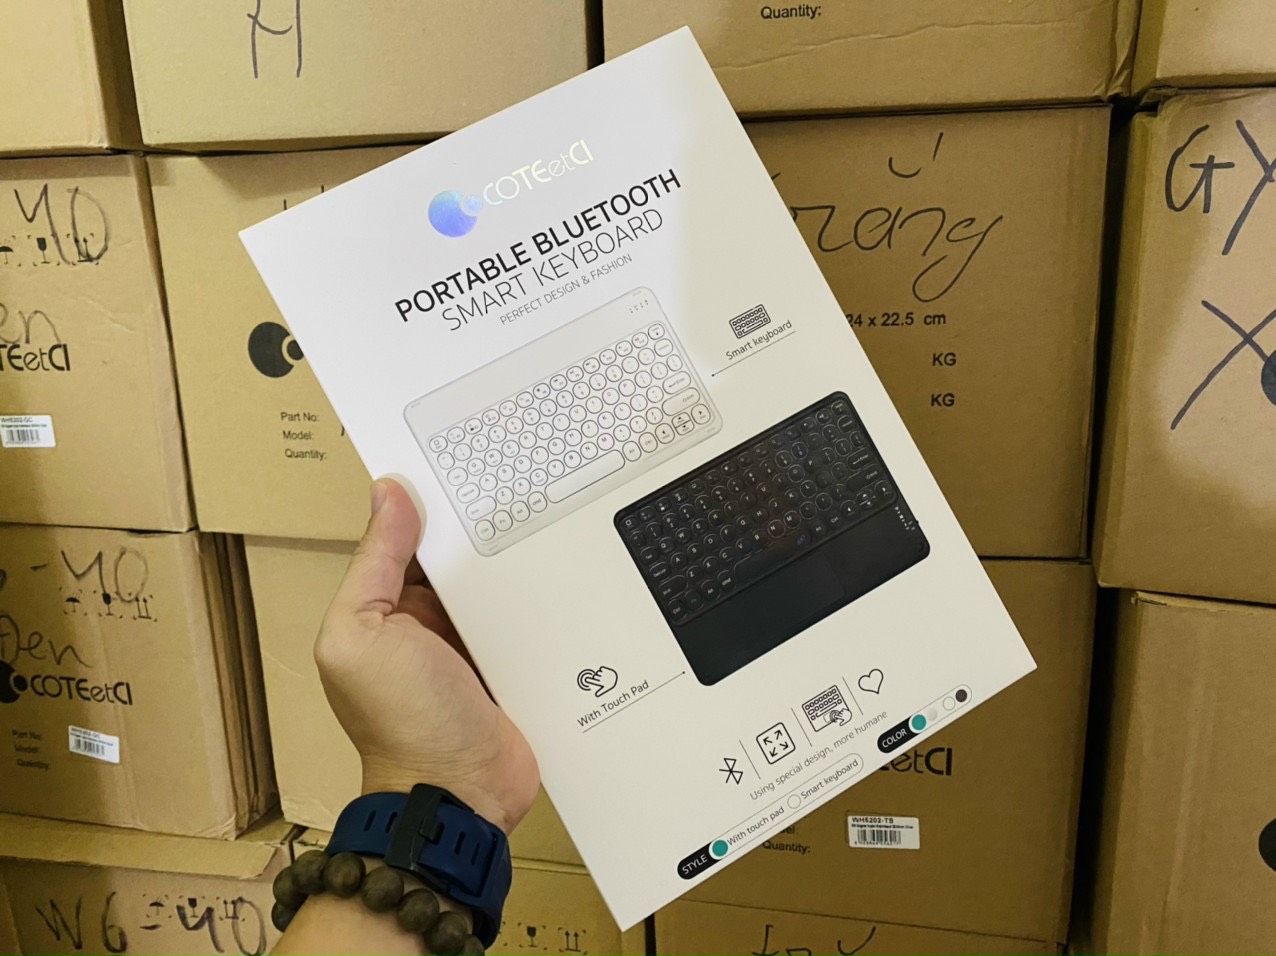 Bàn phím Bluetooth 5.0 không dây tích hợp touchpad cho Cu sac hiệu Coteetci Portable Smart Keyboard (thời lượng pin cực cao 2-4h) - hàng nhập khẩu